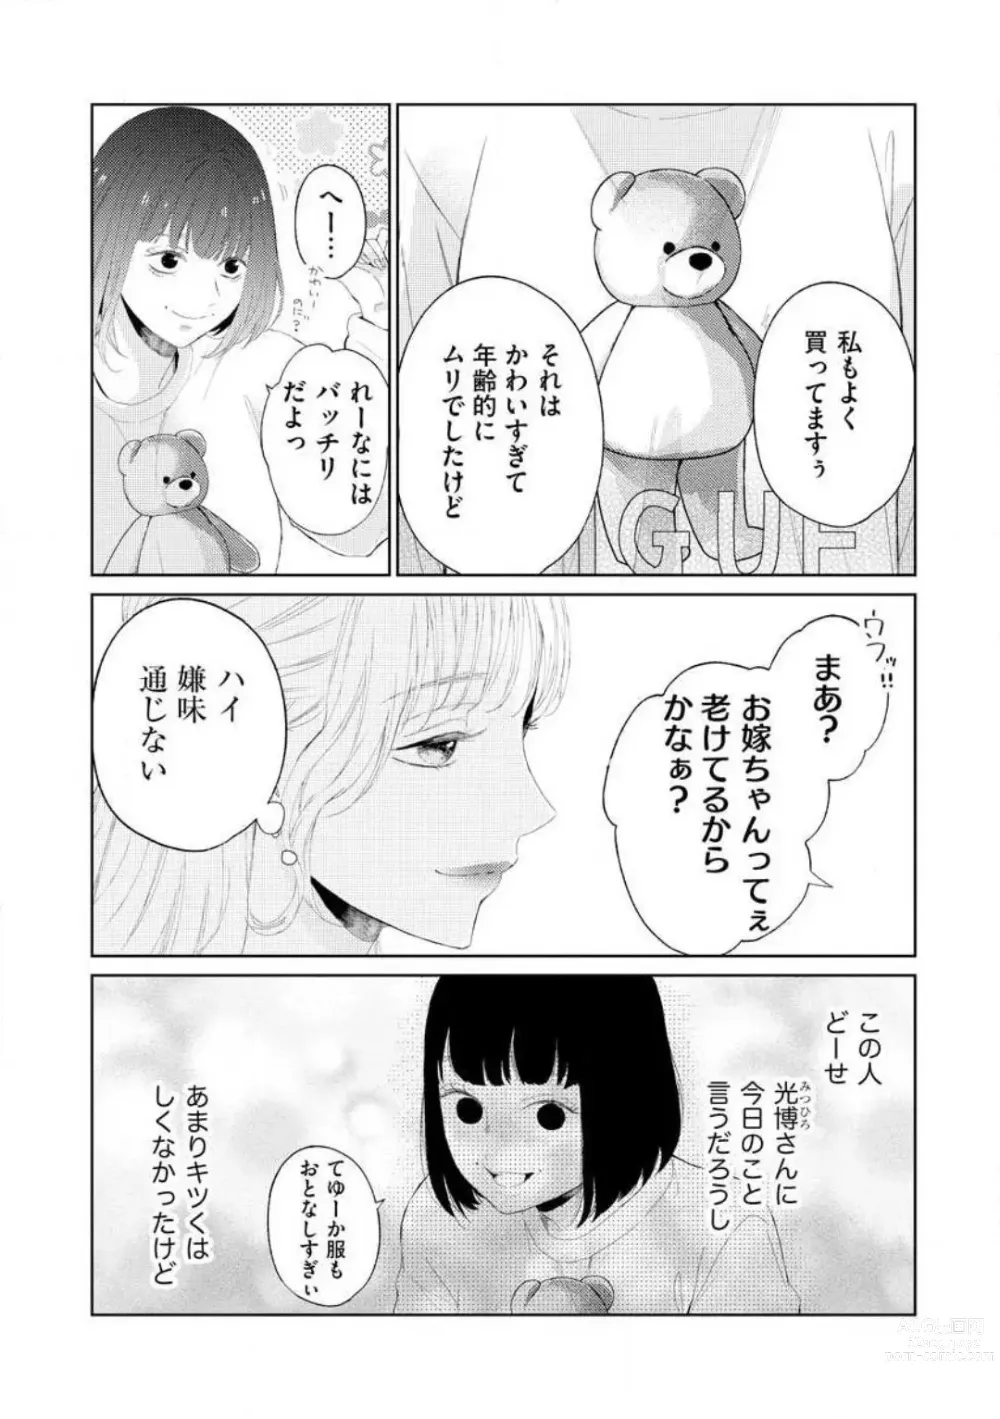 Page 120 of manga 29-sai no Fu Junai 1-5